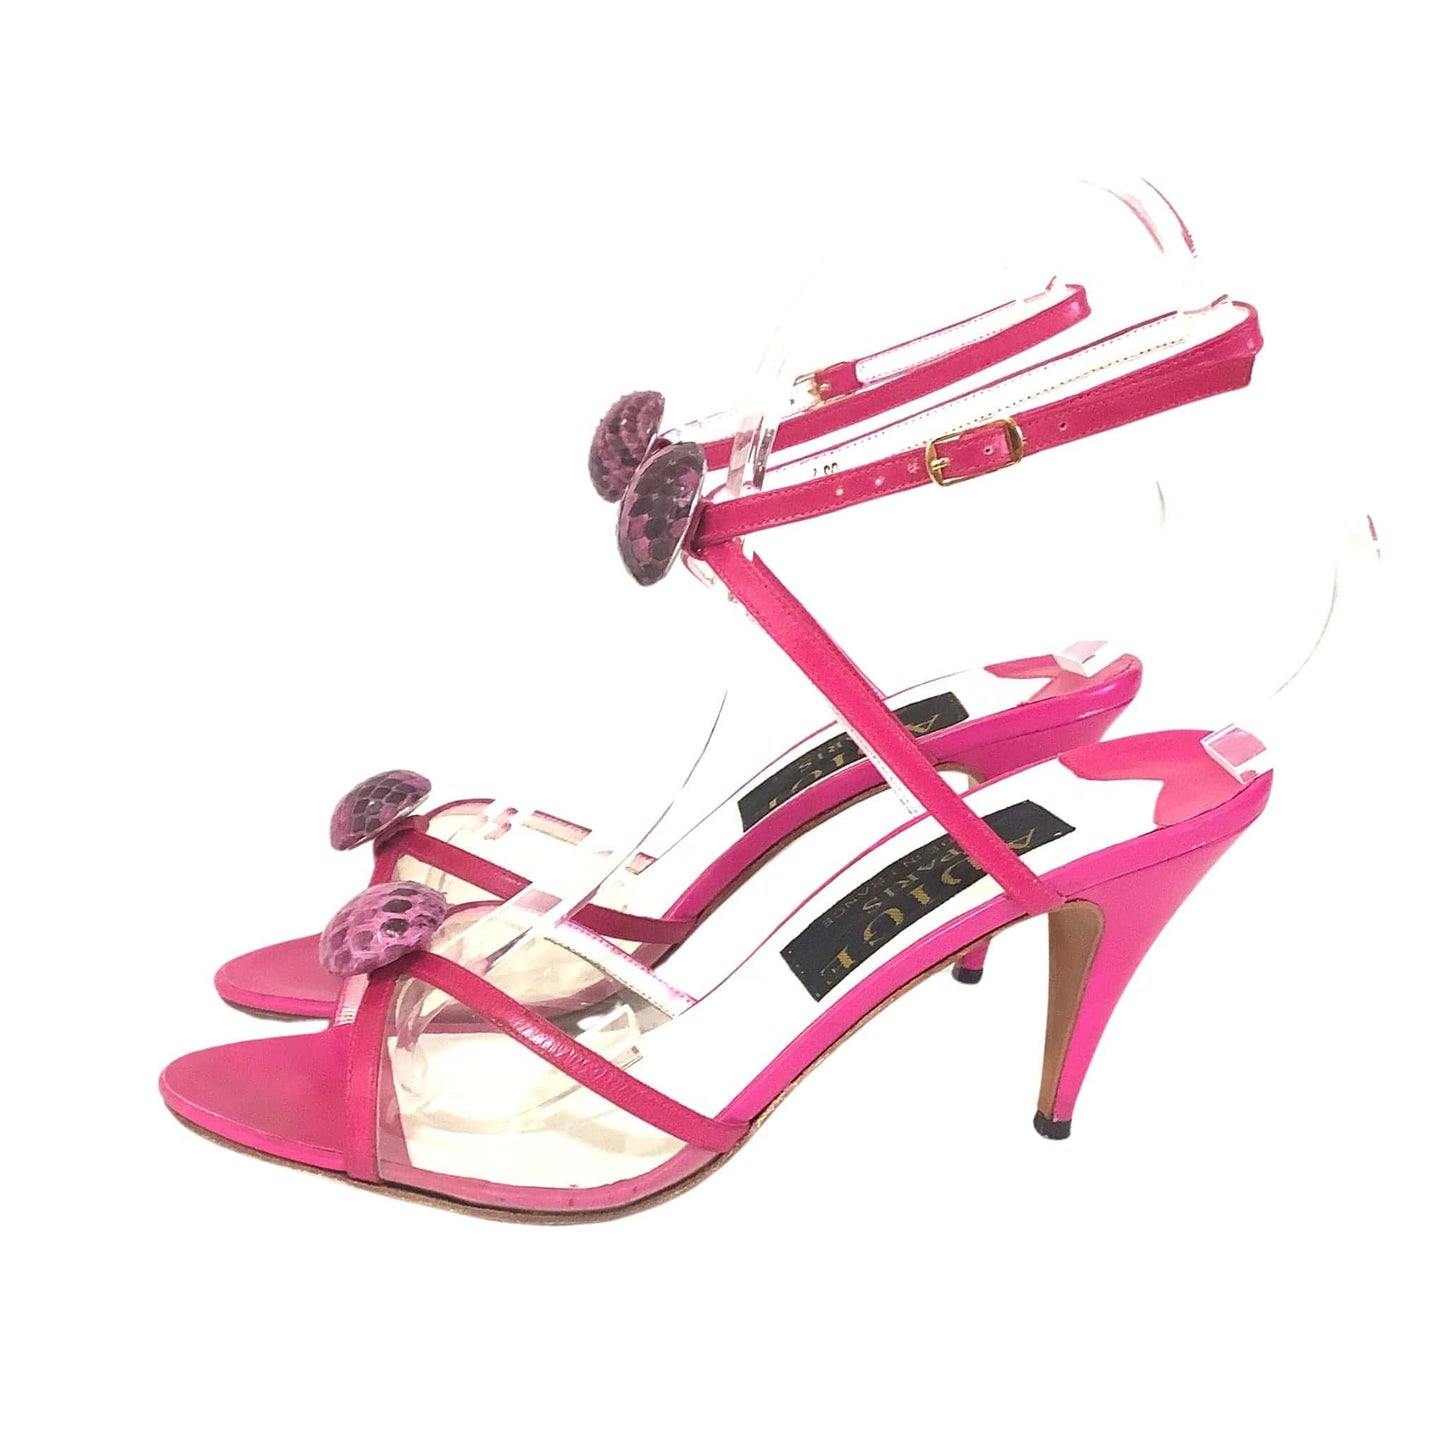 Adige Paris Strappy Heels 7 / Pink / Vintage 1990s